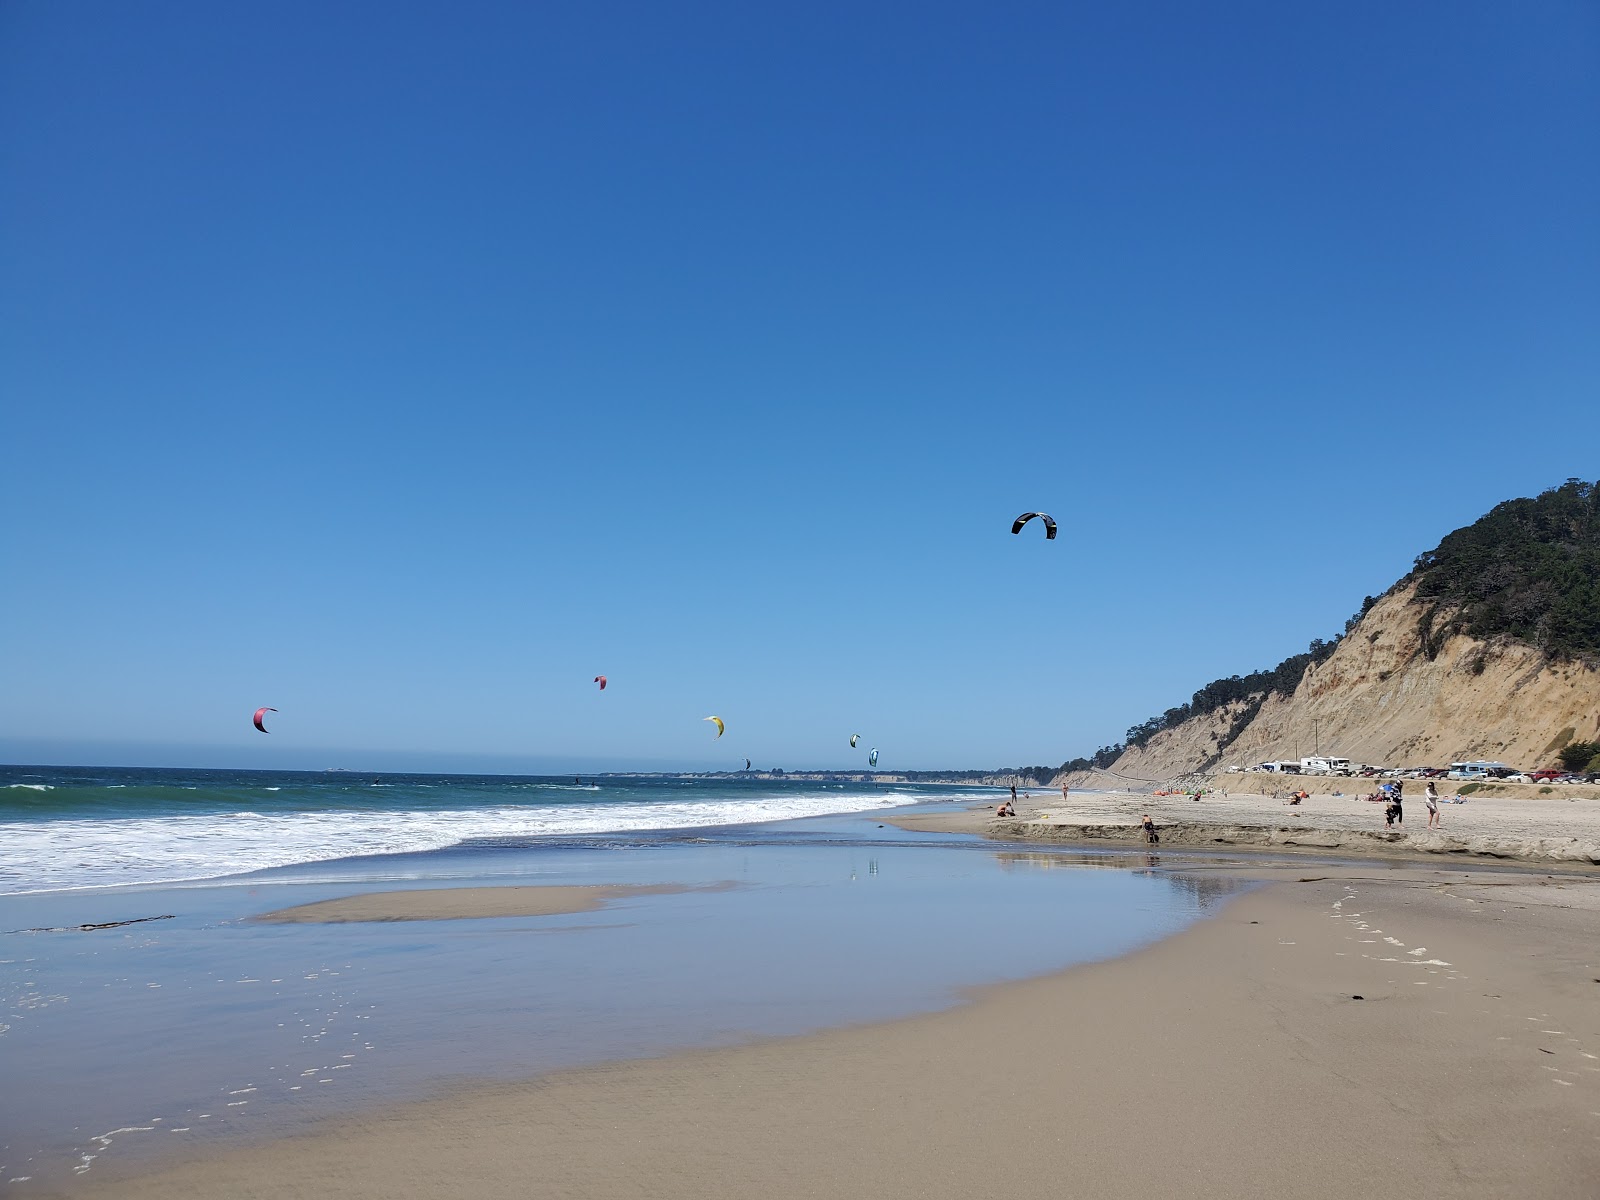 Zdjęcie Monterey beach - popularne miejsce wśród znawców relaksu